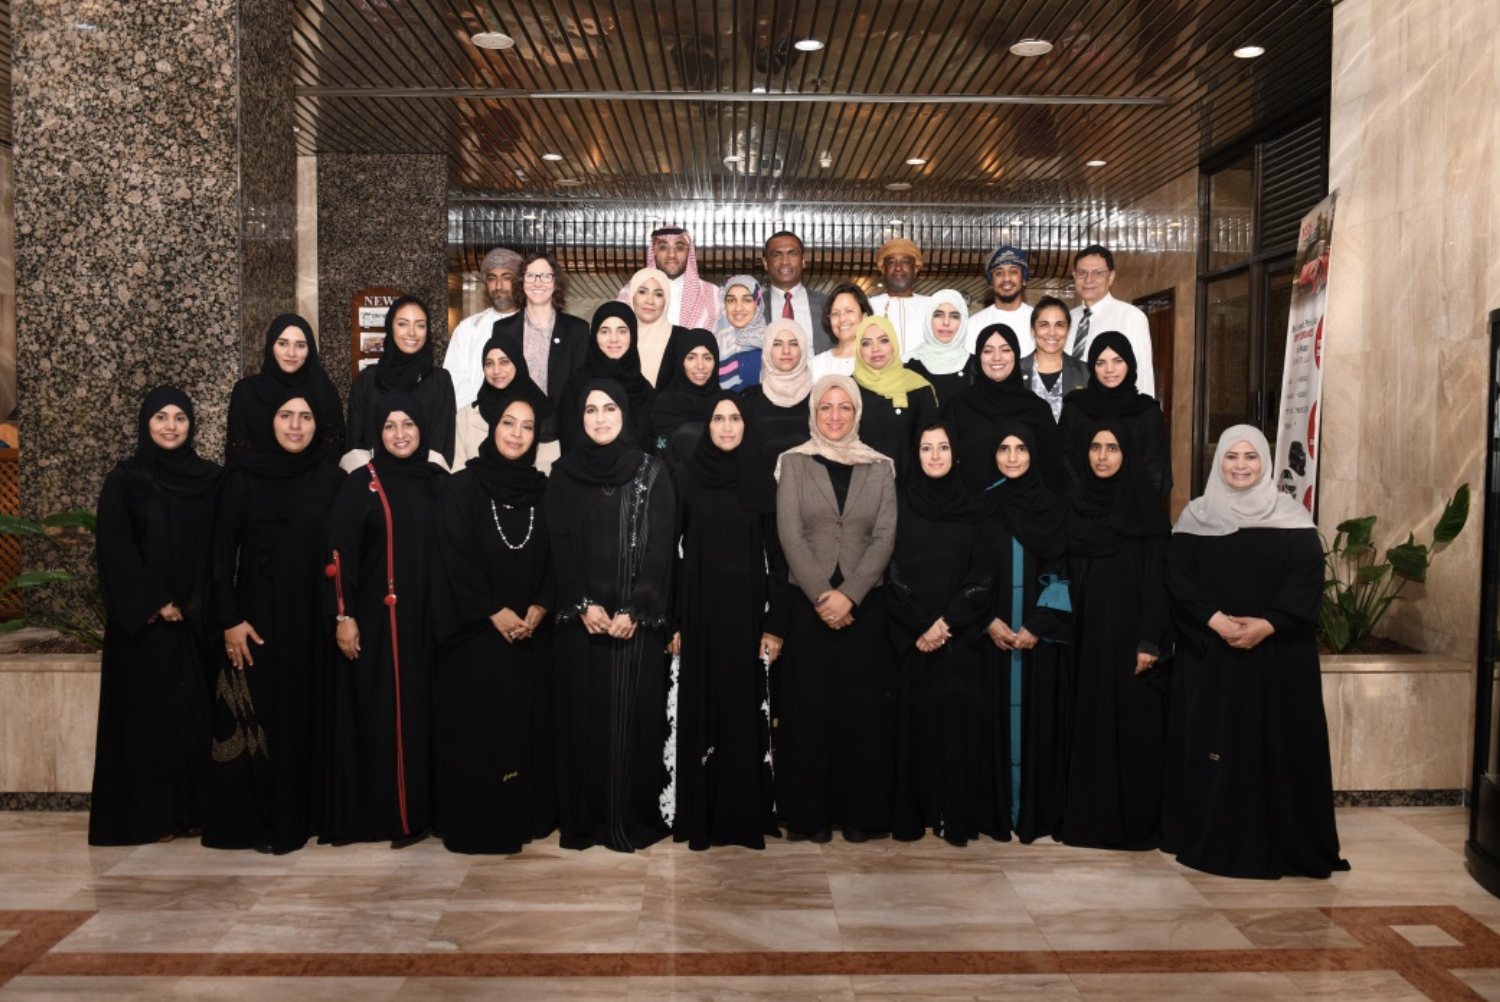 ادارة الصحة العامة وادارة تعزيز الصحة تشاركان في الدورة التدريبية حول النشاط البدني والصحة بسلطنة عمان